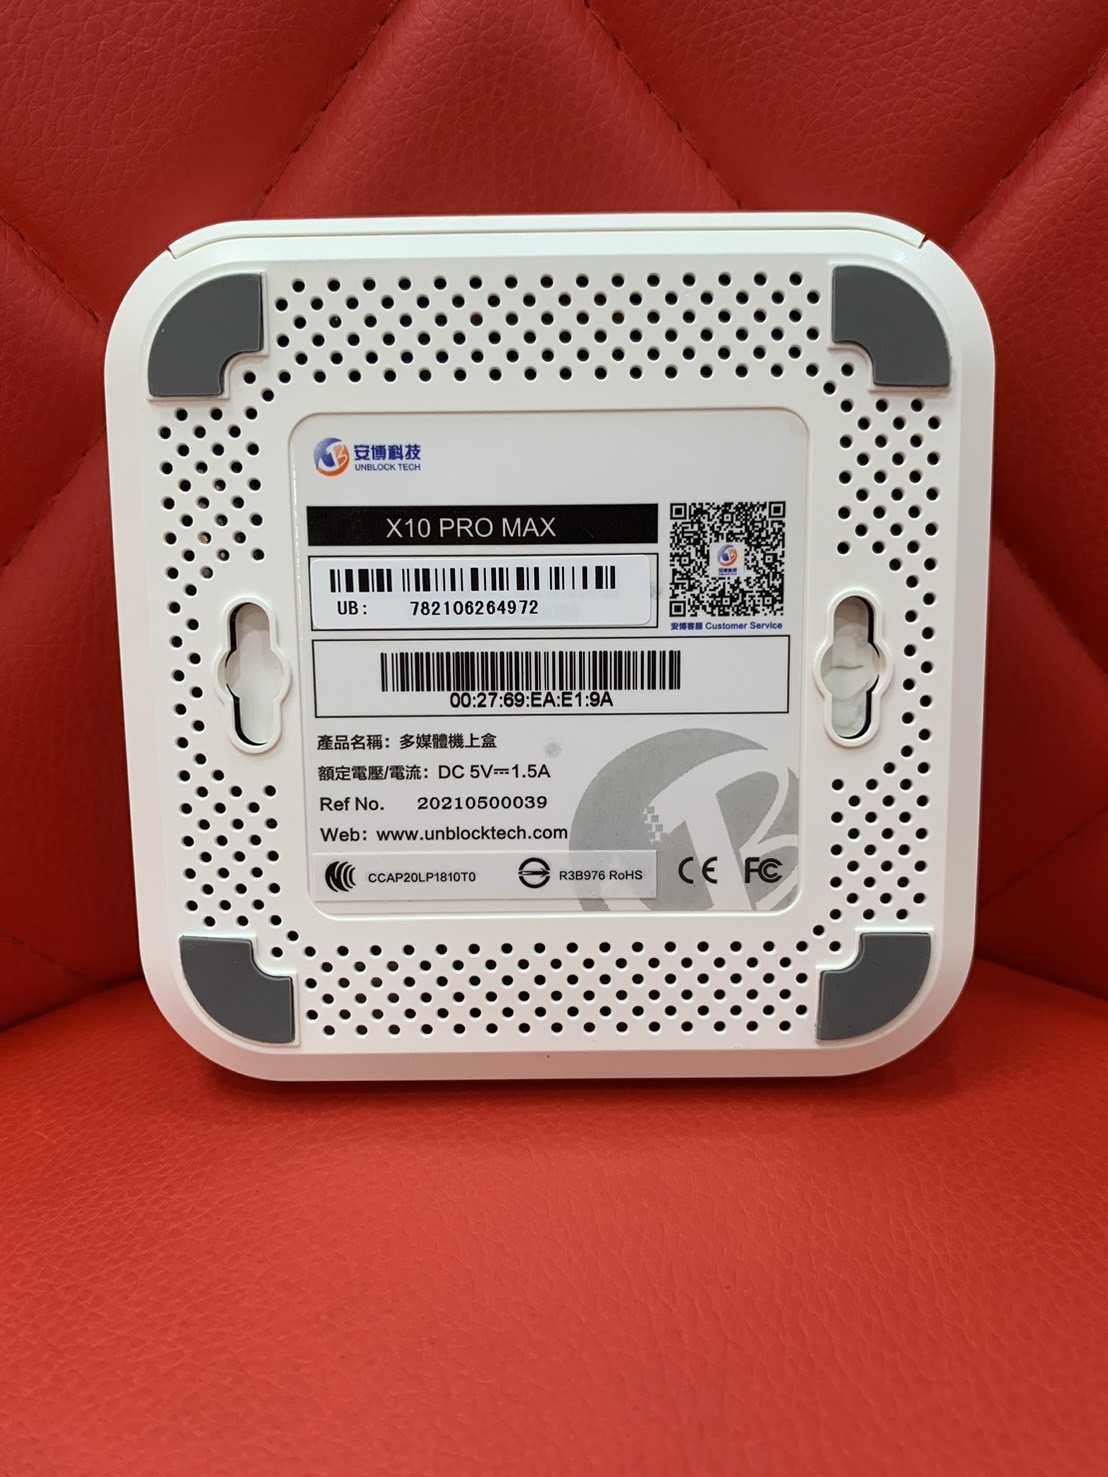 【艾爾巴二手】UBOX 8 安博 盒子PRO MAX X10 純淨版 #二手電視盒 #錦州店 64972